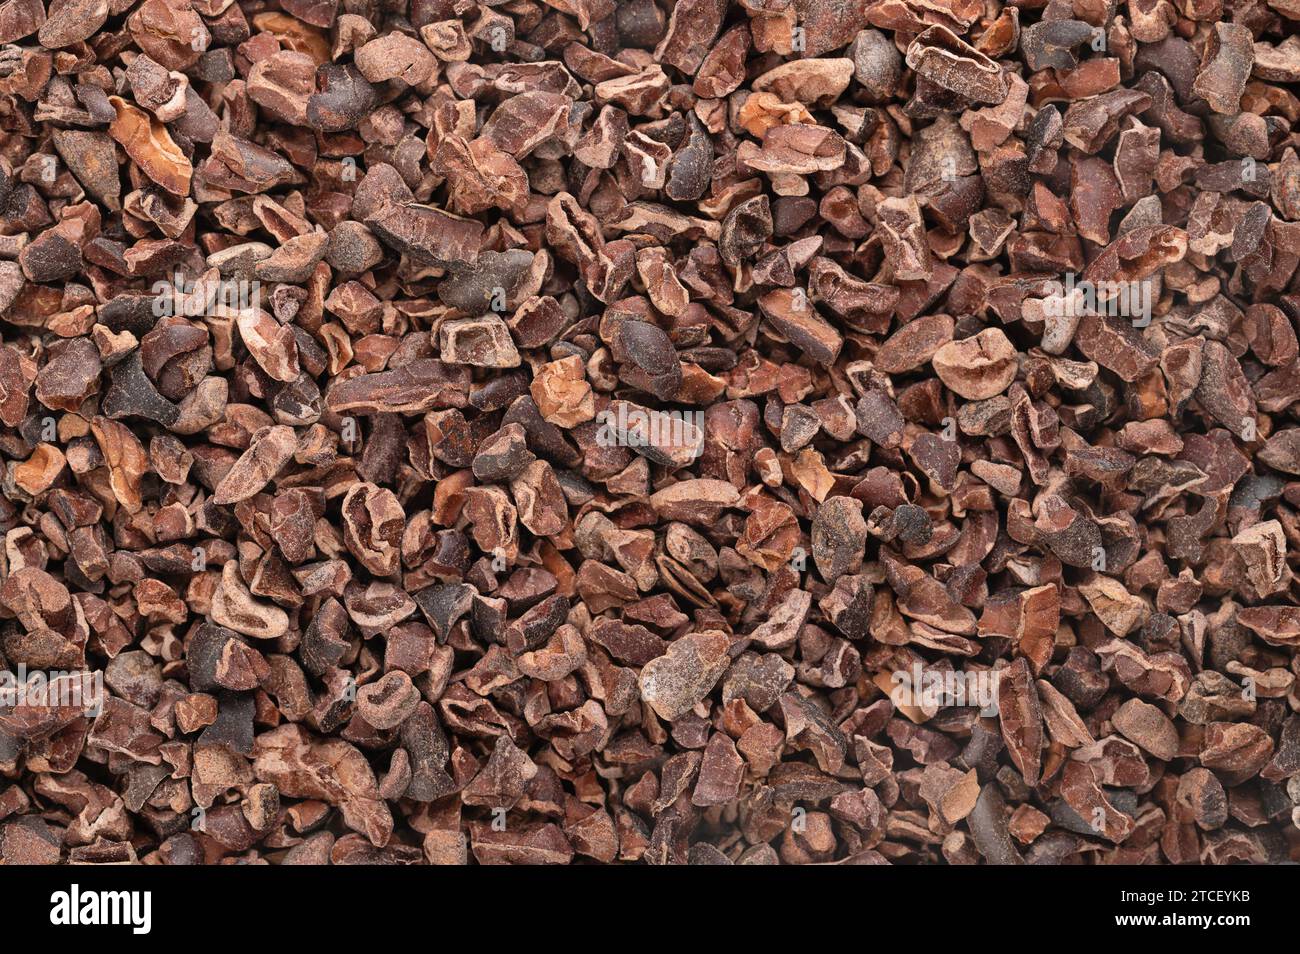 Kakaospitzen. Hintergrund mit zerstoßenen getrockneten, fermentierten Kernen von Kakaobohnen, Samen von Theobroma cacao, im Allgemeinen zu Schokolade verarbeitet. Stockfoto